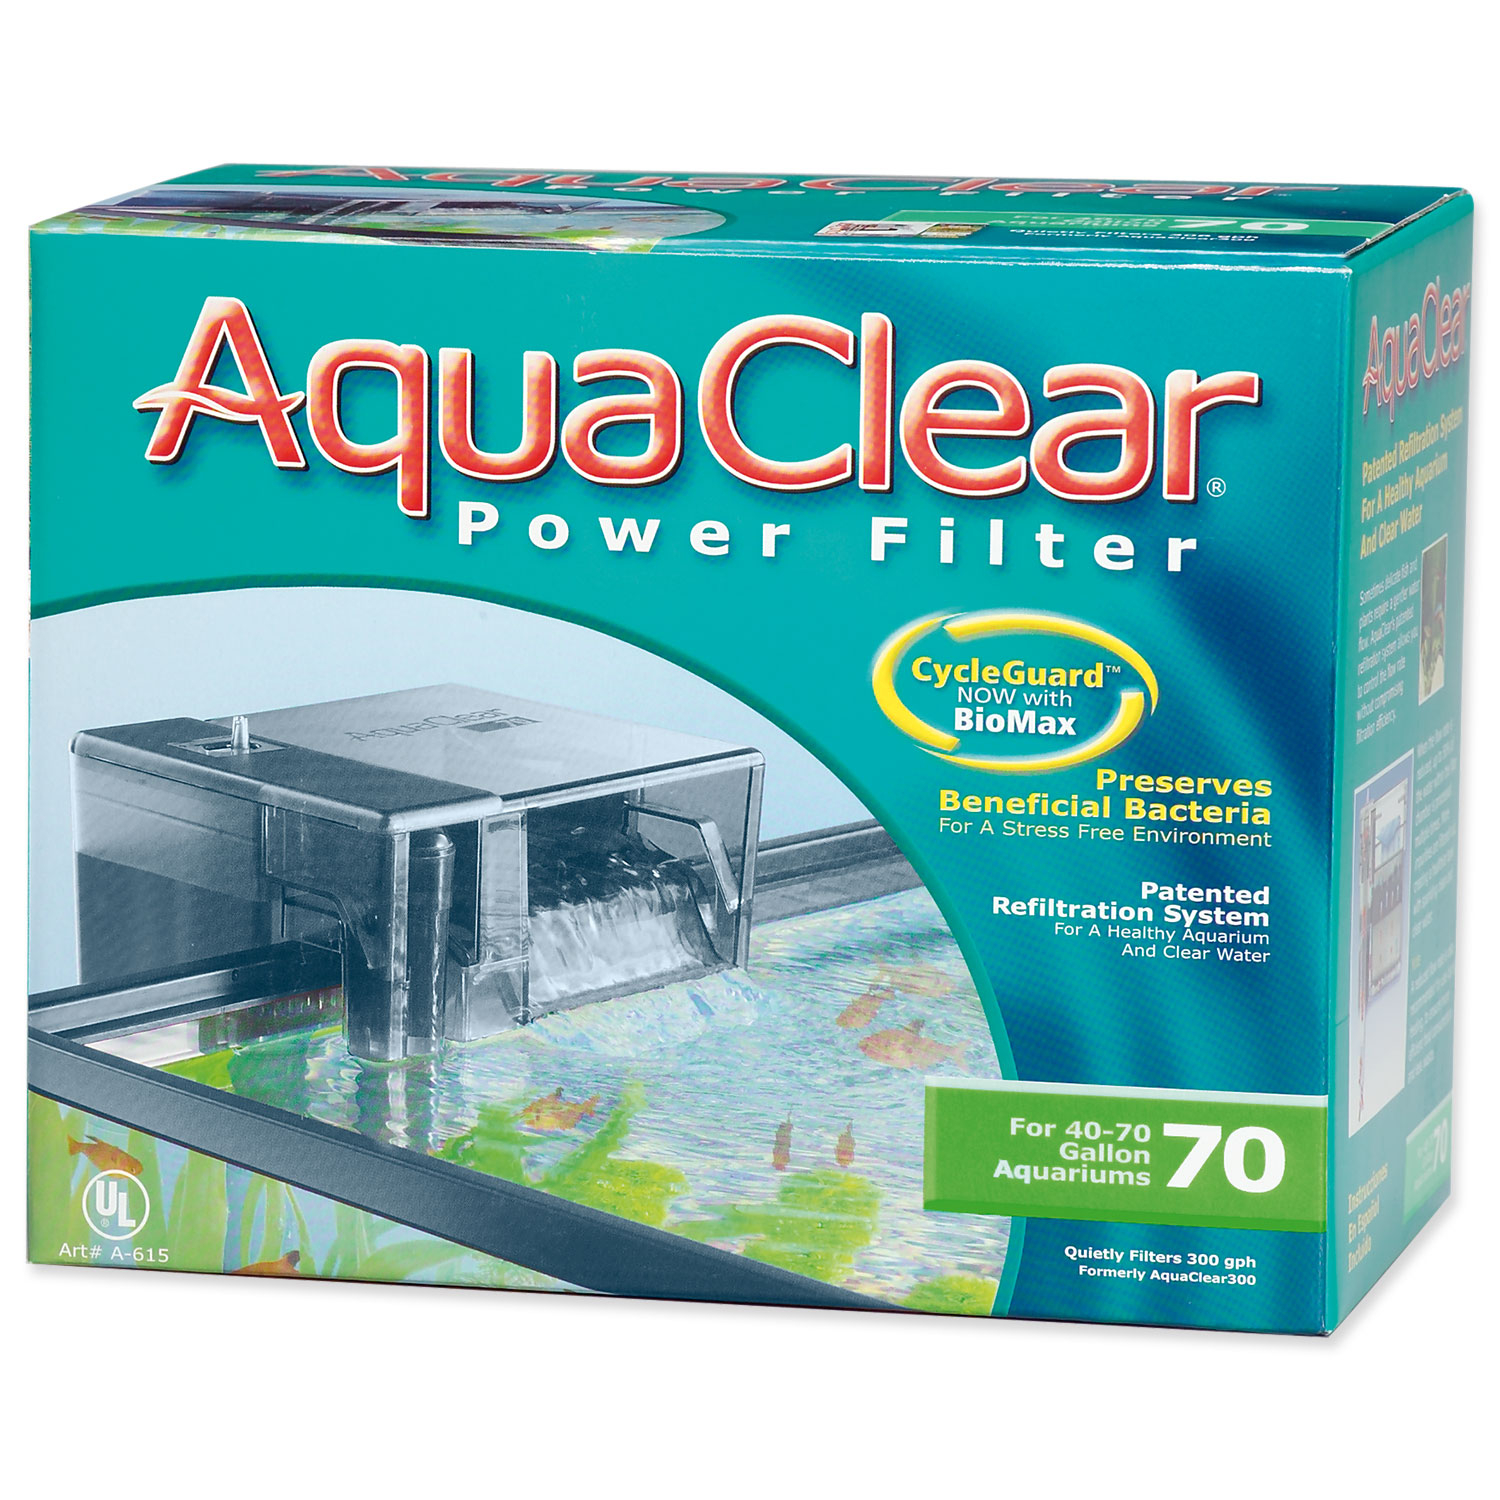 Filtr AQUA CLEAR 70 vnější